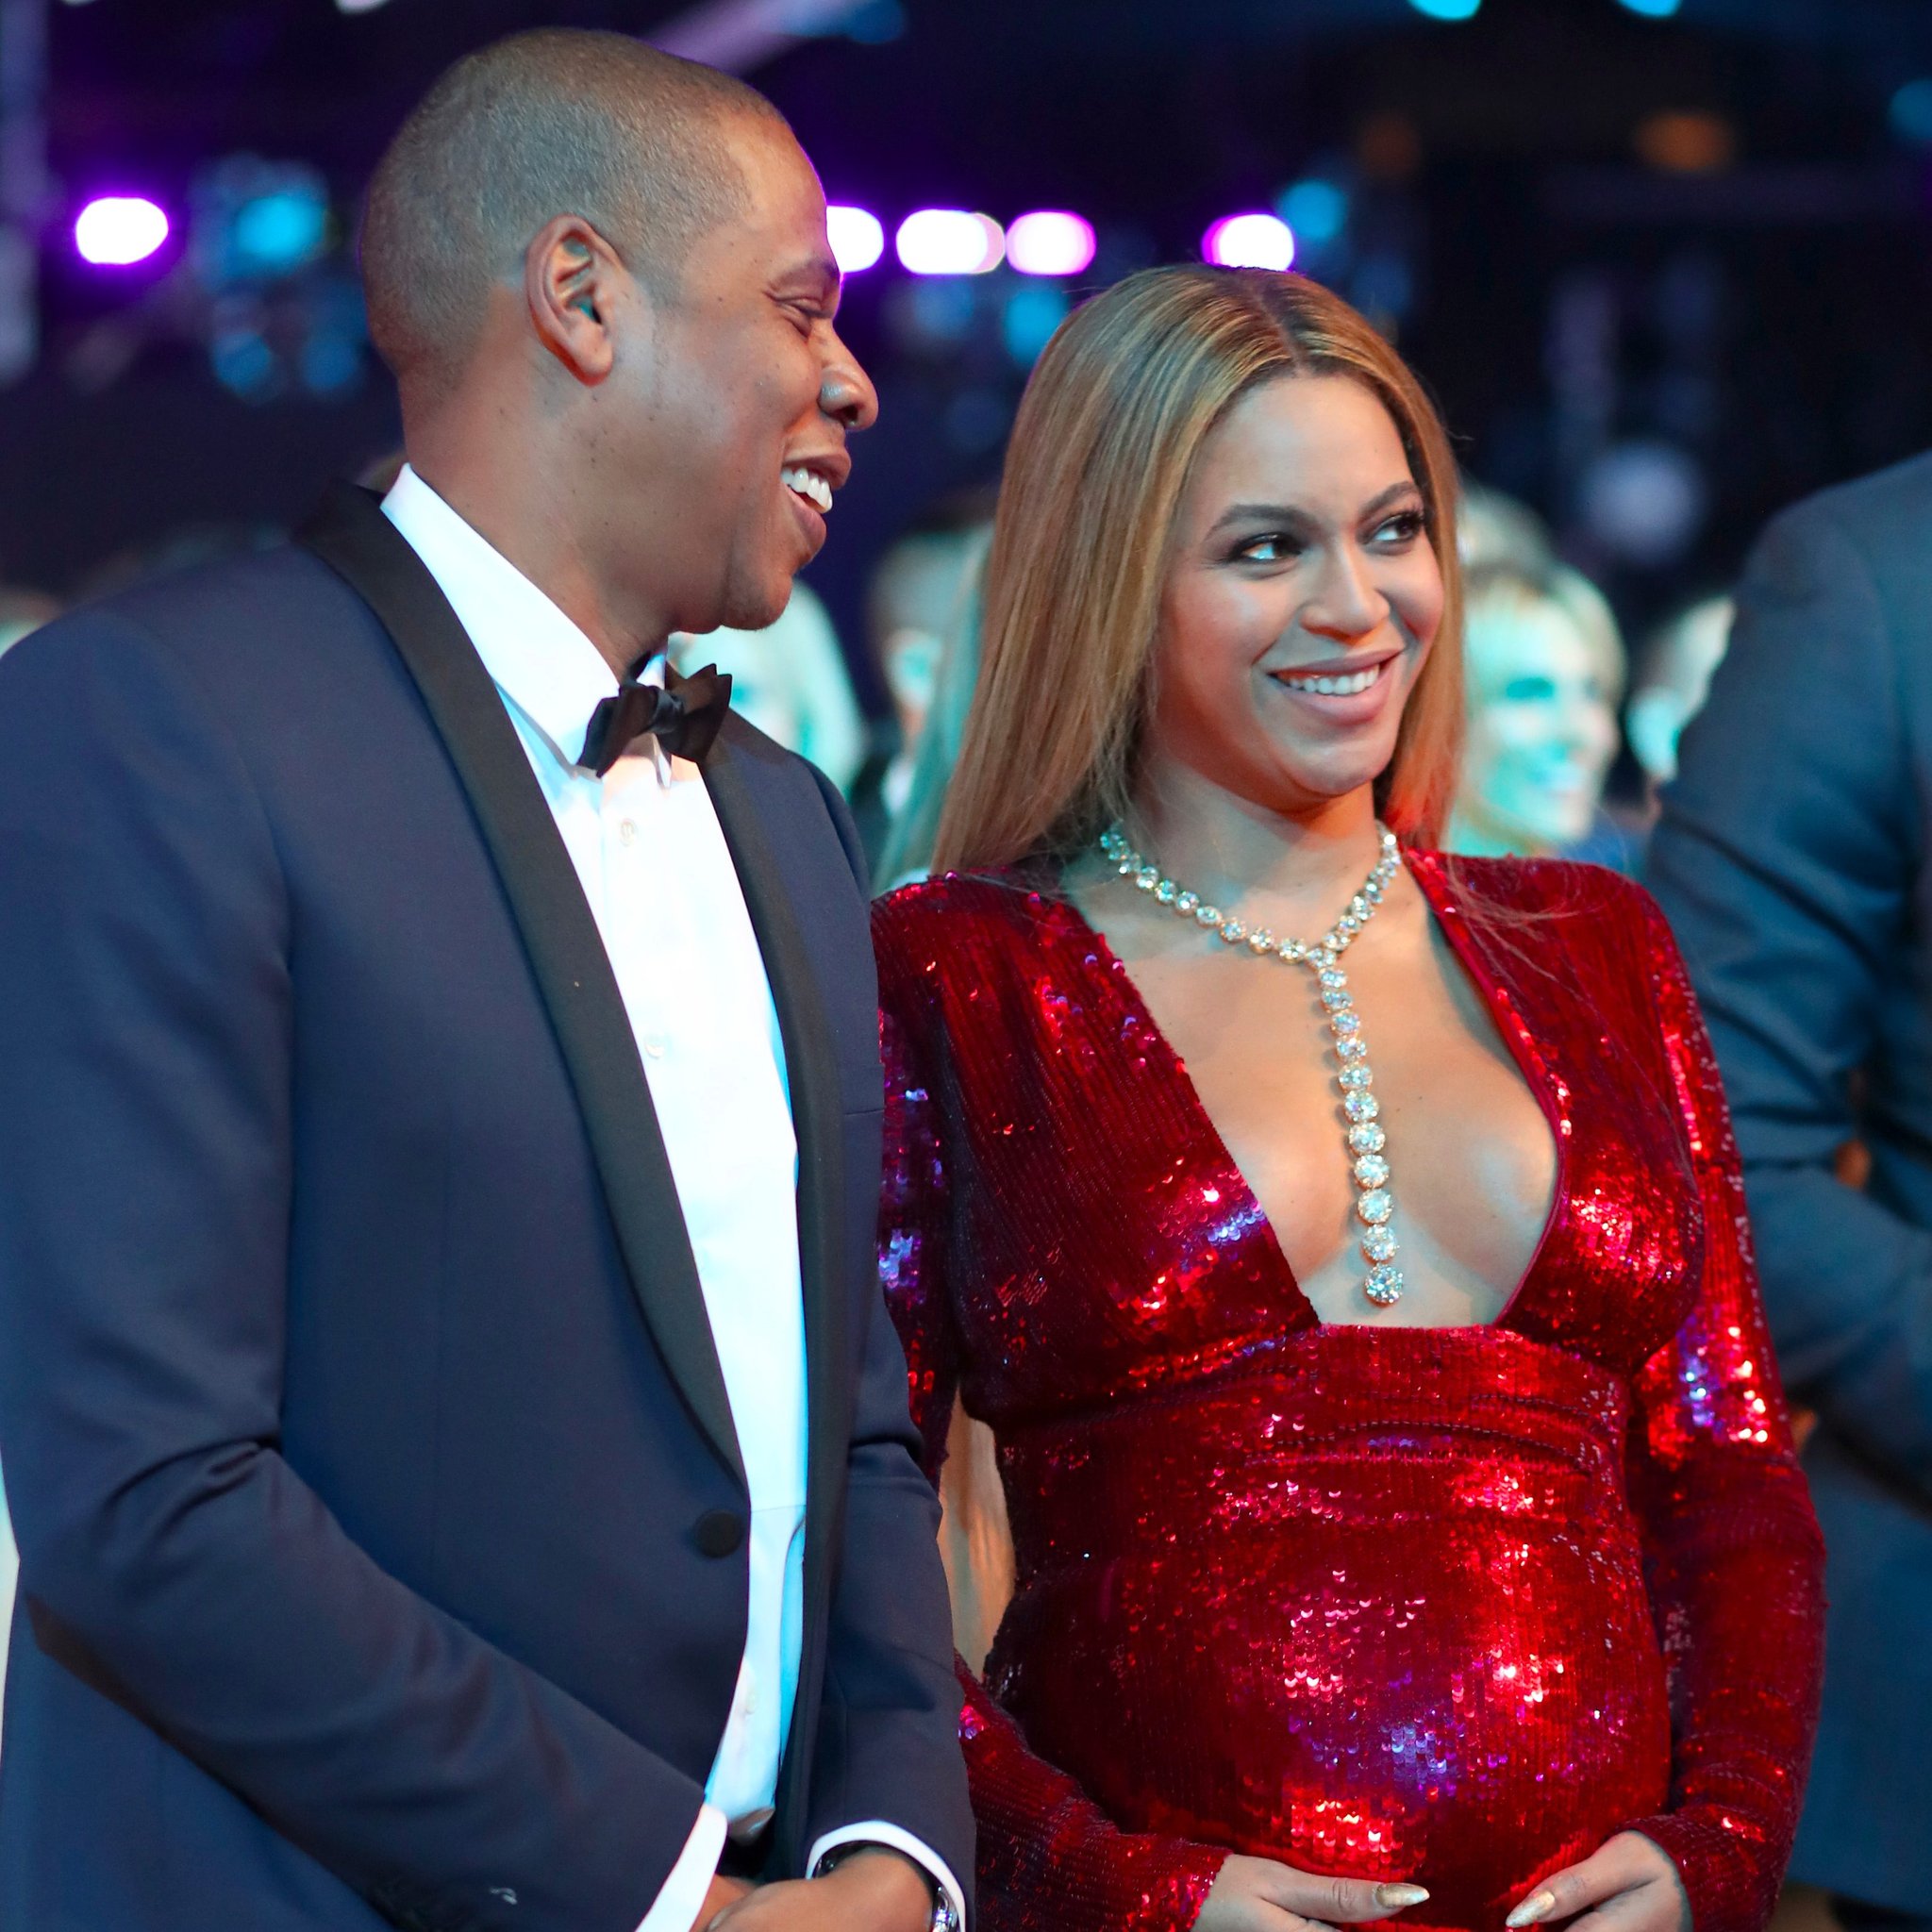 Beyonce si Jay-Z, cuplul de UN MILIARD de dolari. Din ce câștigă banii ăștia?!